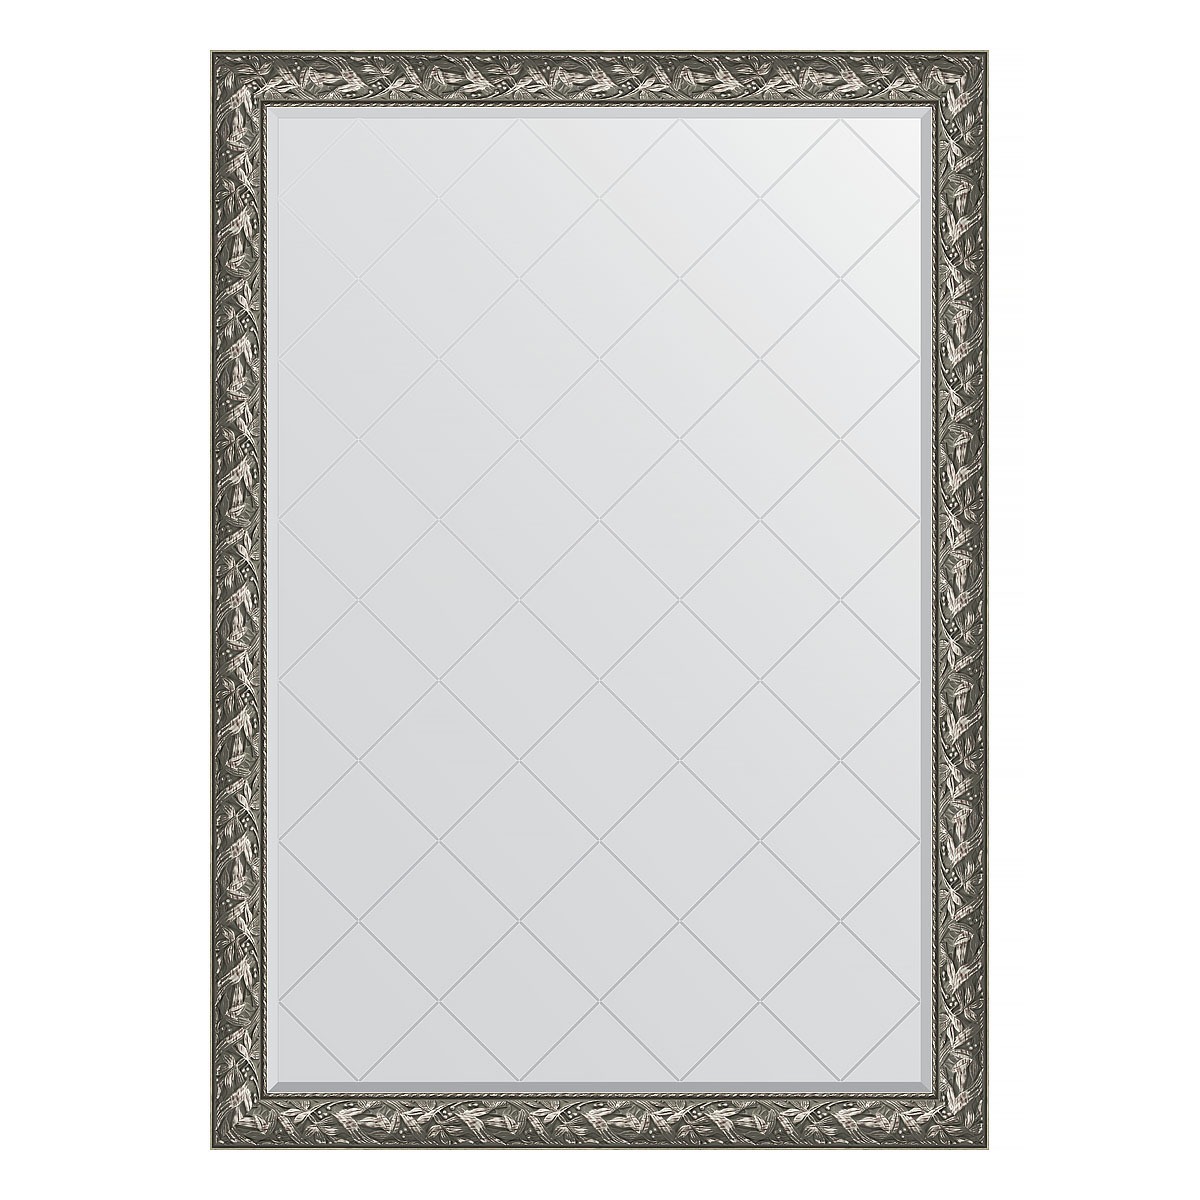 Зеркало с гравировкой в багетной раме Evoform византия серебро 99 мм 134x188 см зеркало с гравировкой в багетной раме византия серебро 99 мм 134x188 см